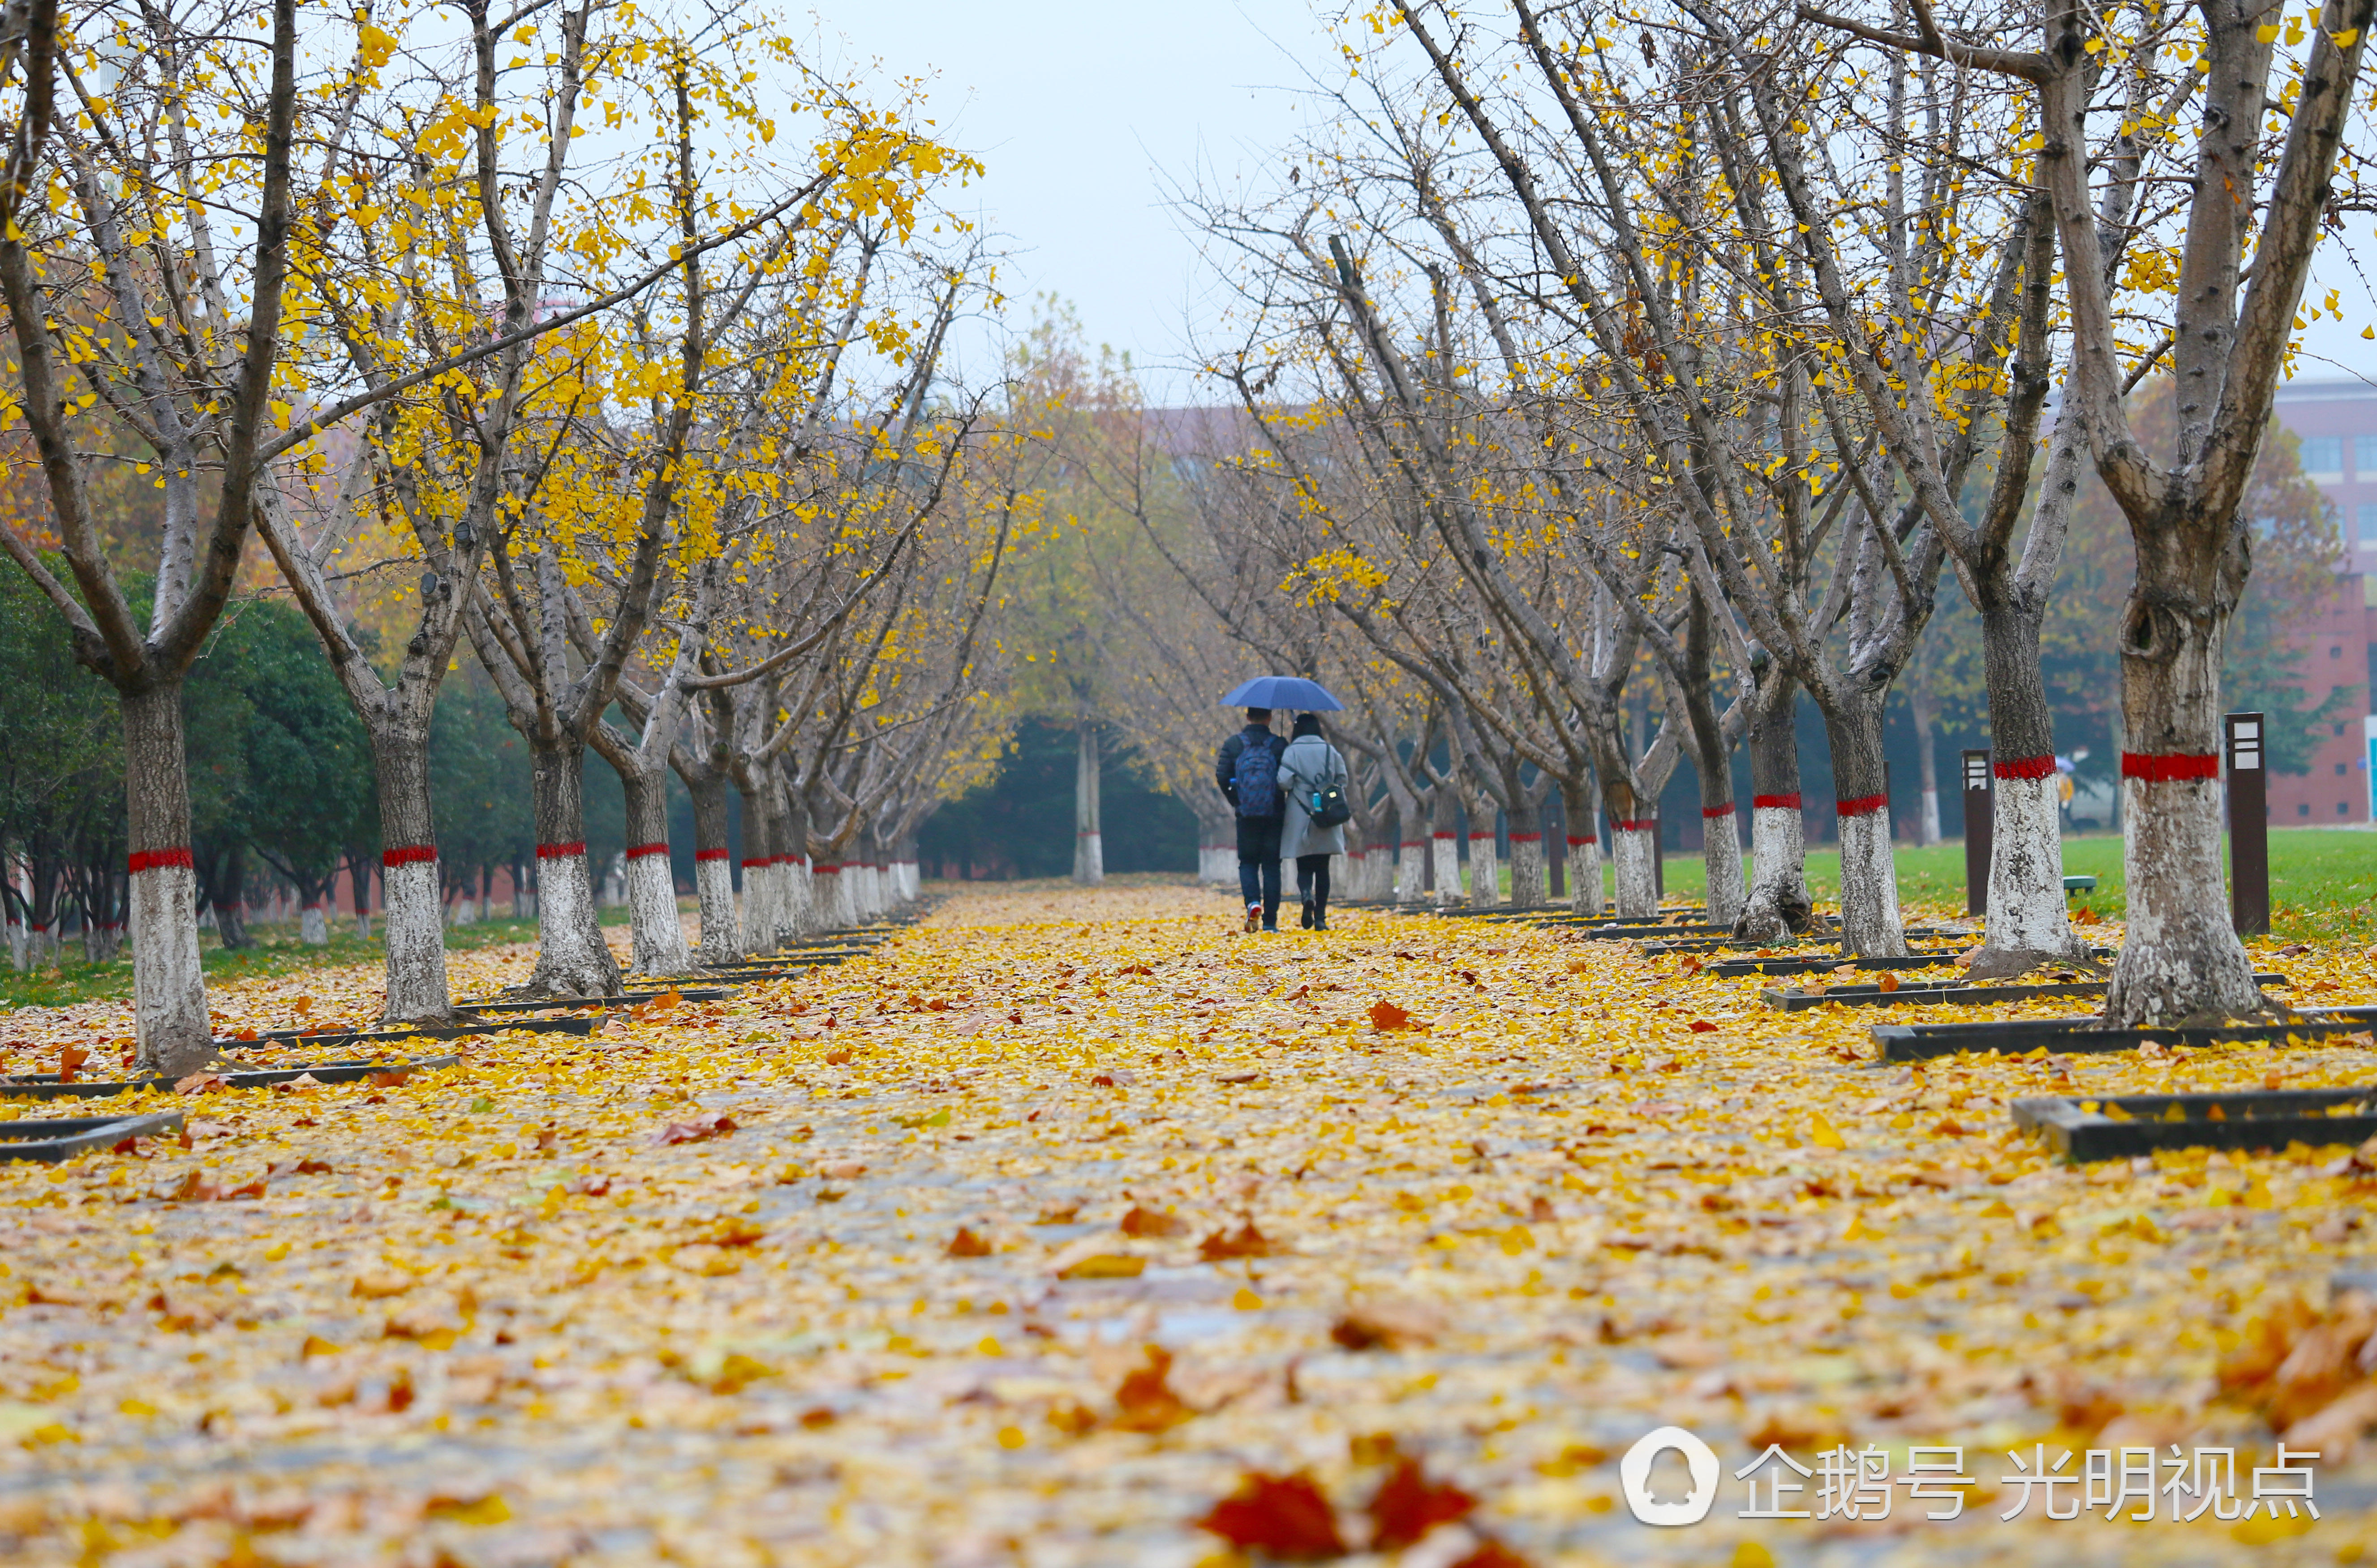 郑州大学校园内上百颗银杏树下落满黄叶,宛若黄金铺地,风景如画,为